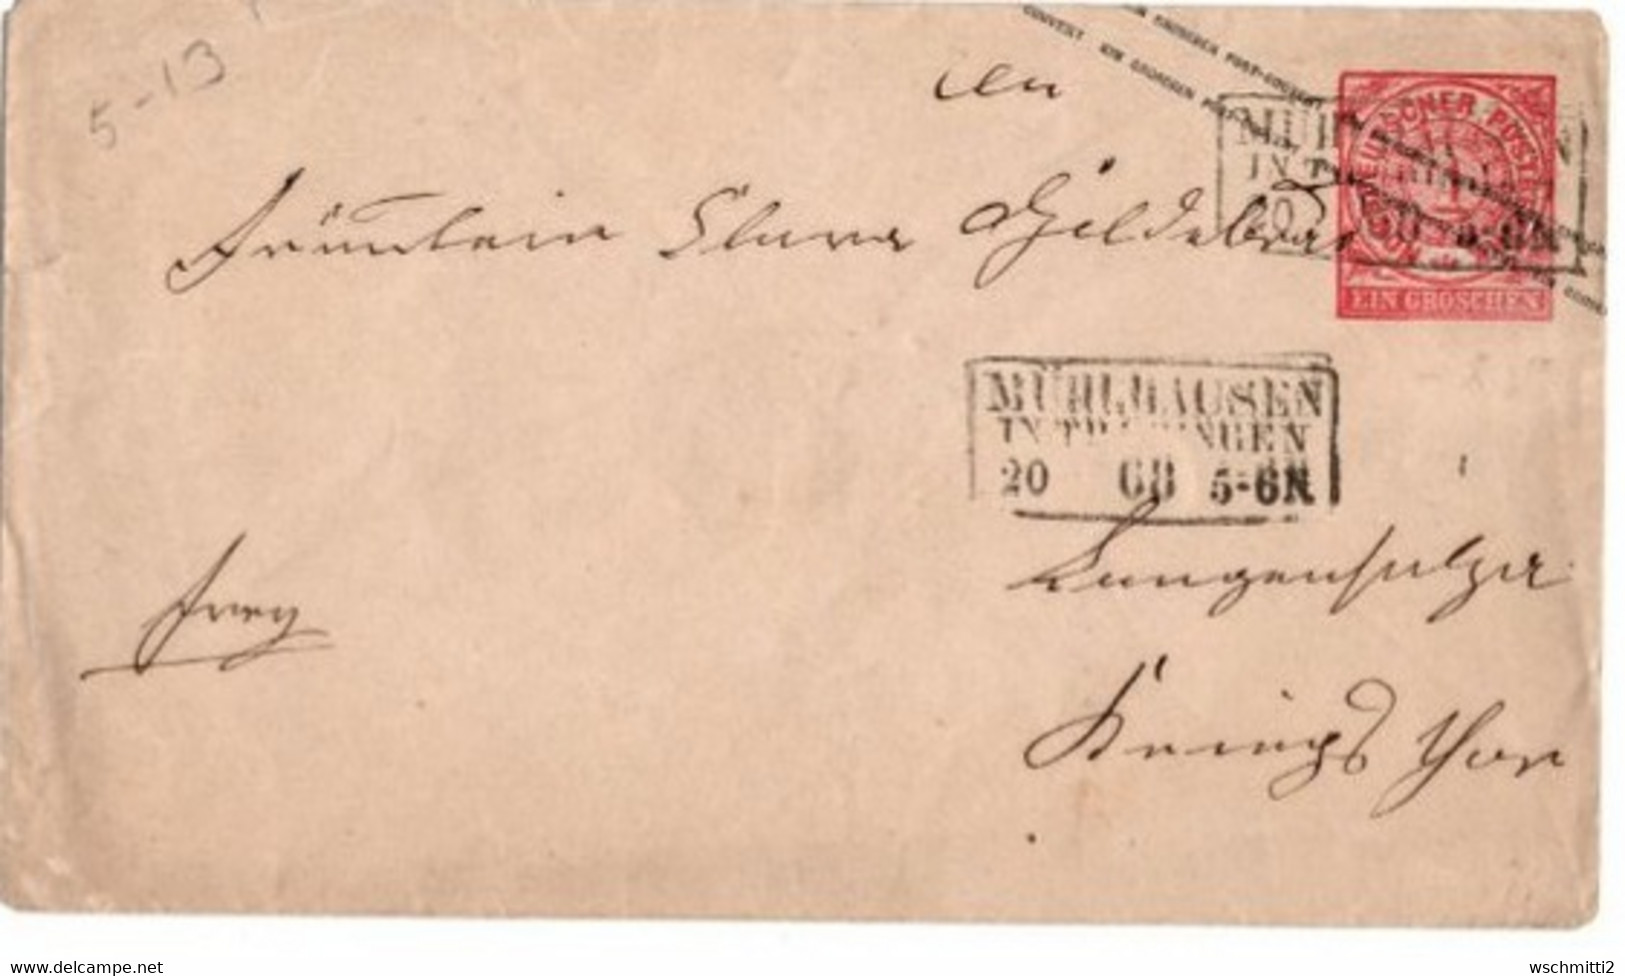 NDB  Umschlag U 1b A MÜHLHAUSEN In THÜRINGEN (3-zeil- Rahmenst.) - LANGENSALZA, 20 - (12)  - 68 - Postal  Stationery